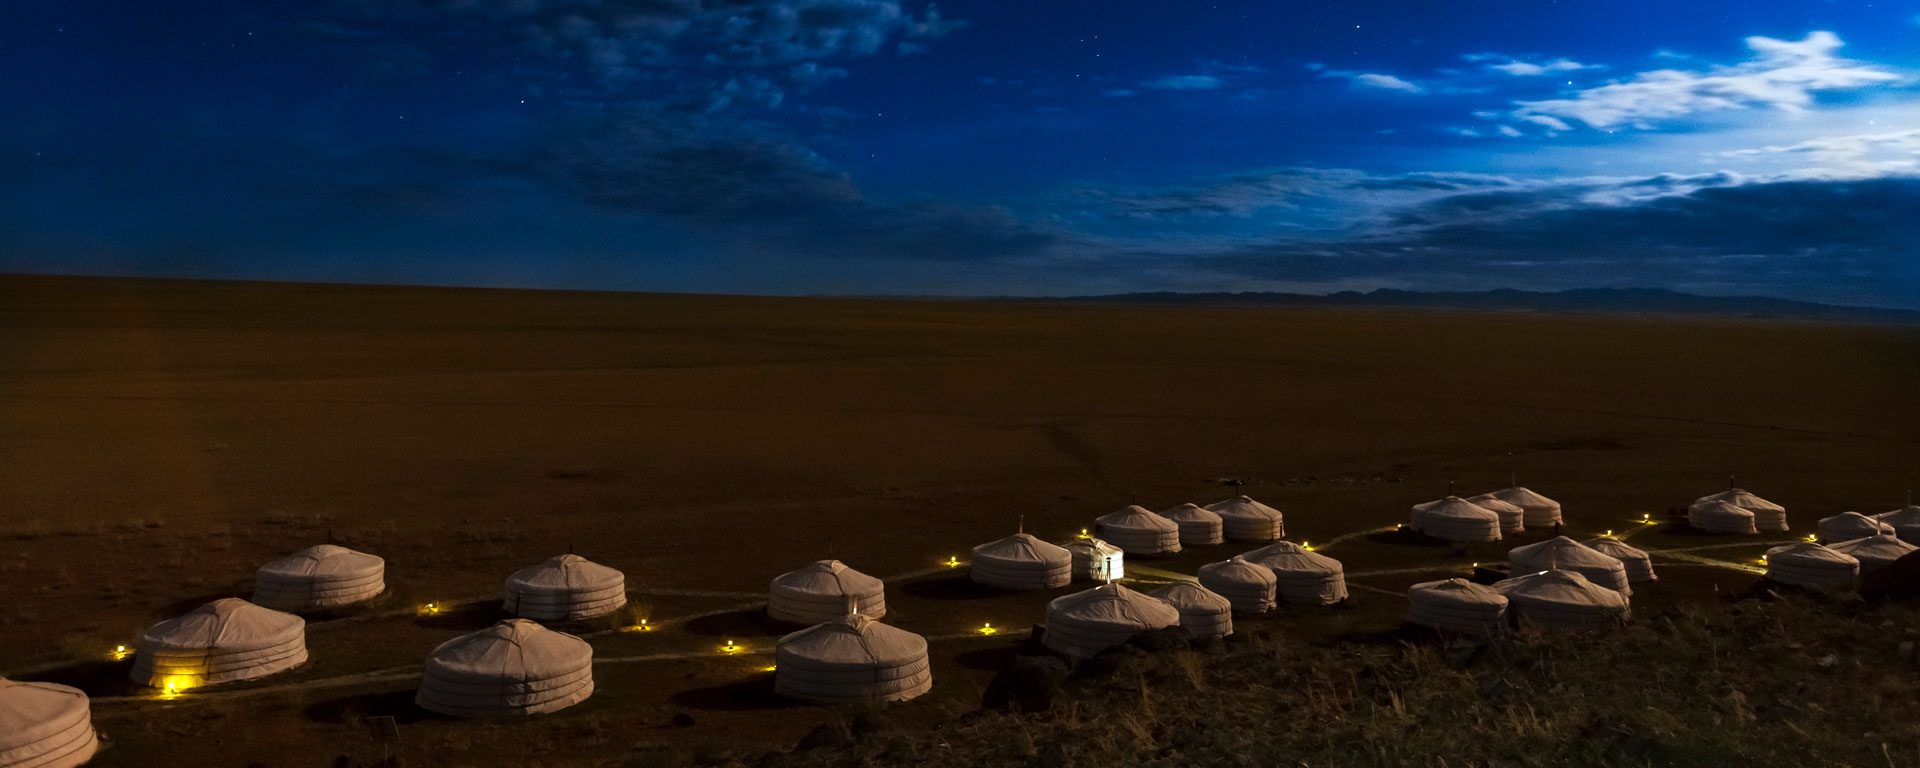 Stars over Three Camel Lodge ger camp in the Gobi Desert, Mongolia